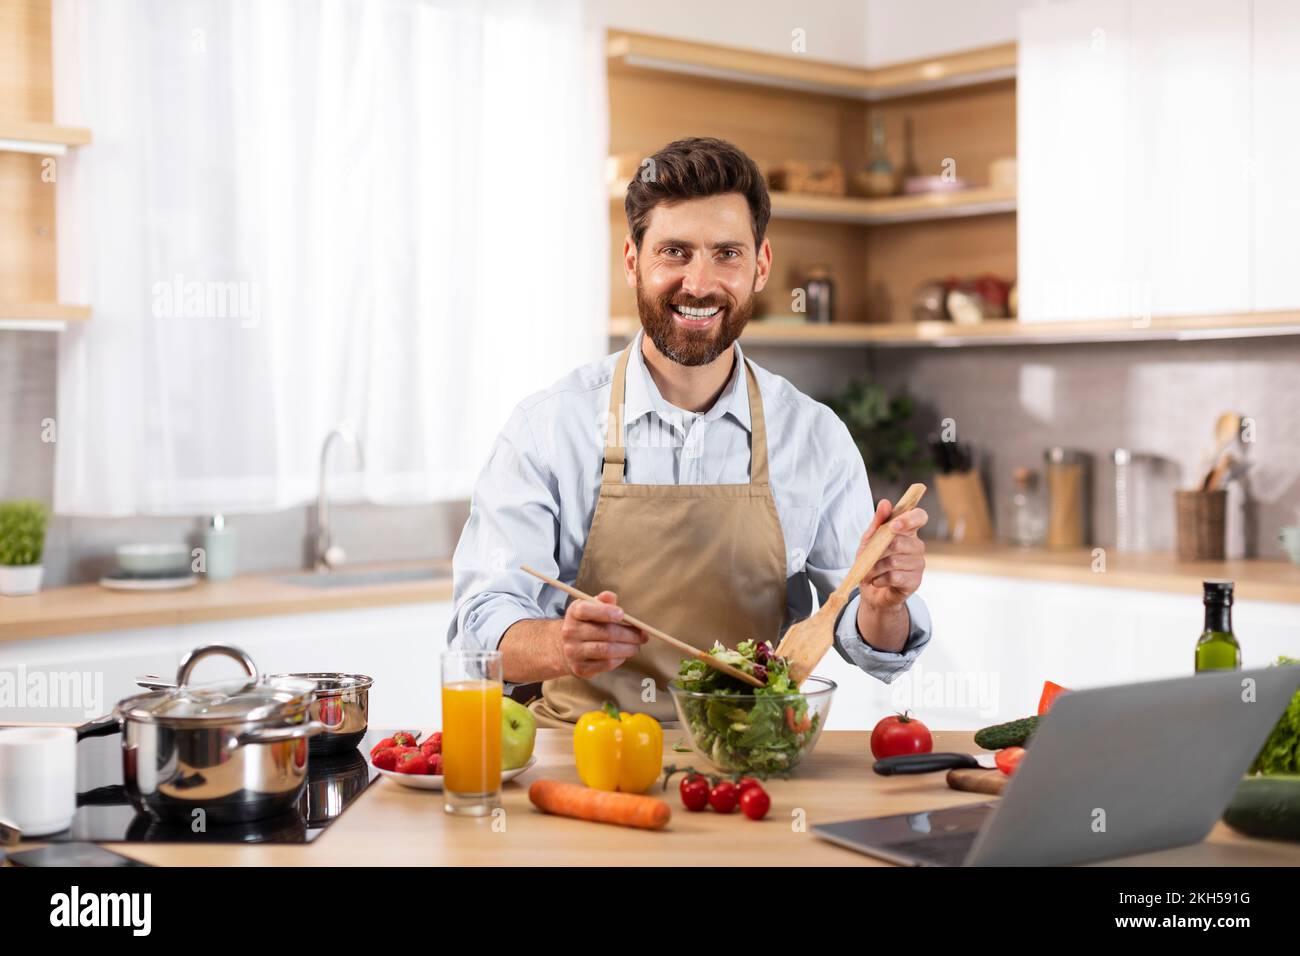 Lächelnder männlicher Koch mit europäischem Bart in der Schürze bereitet Salat in moderner Küche zu Stockfoto